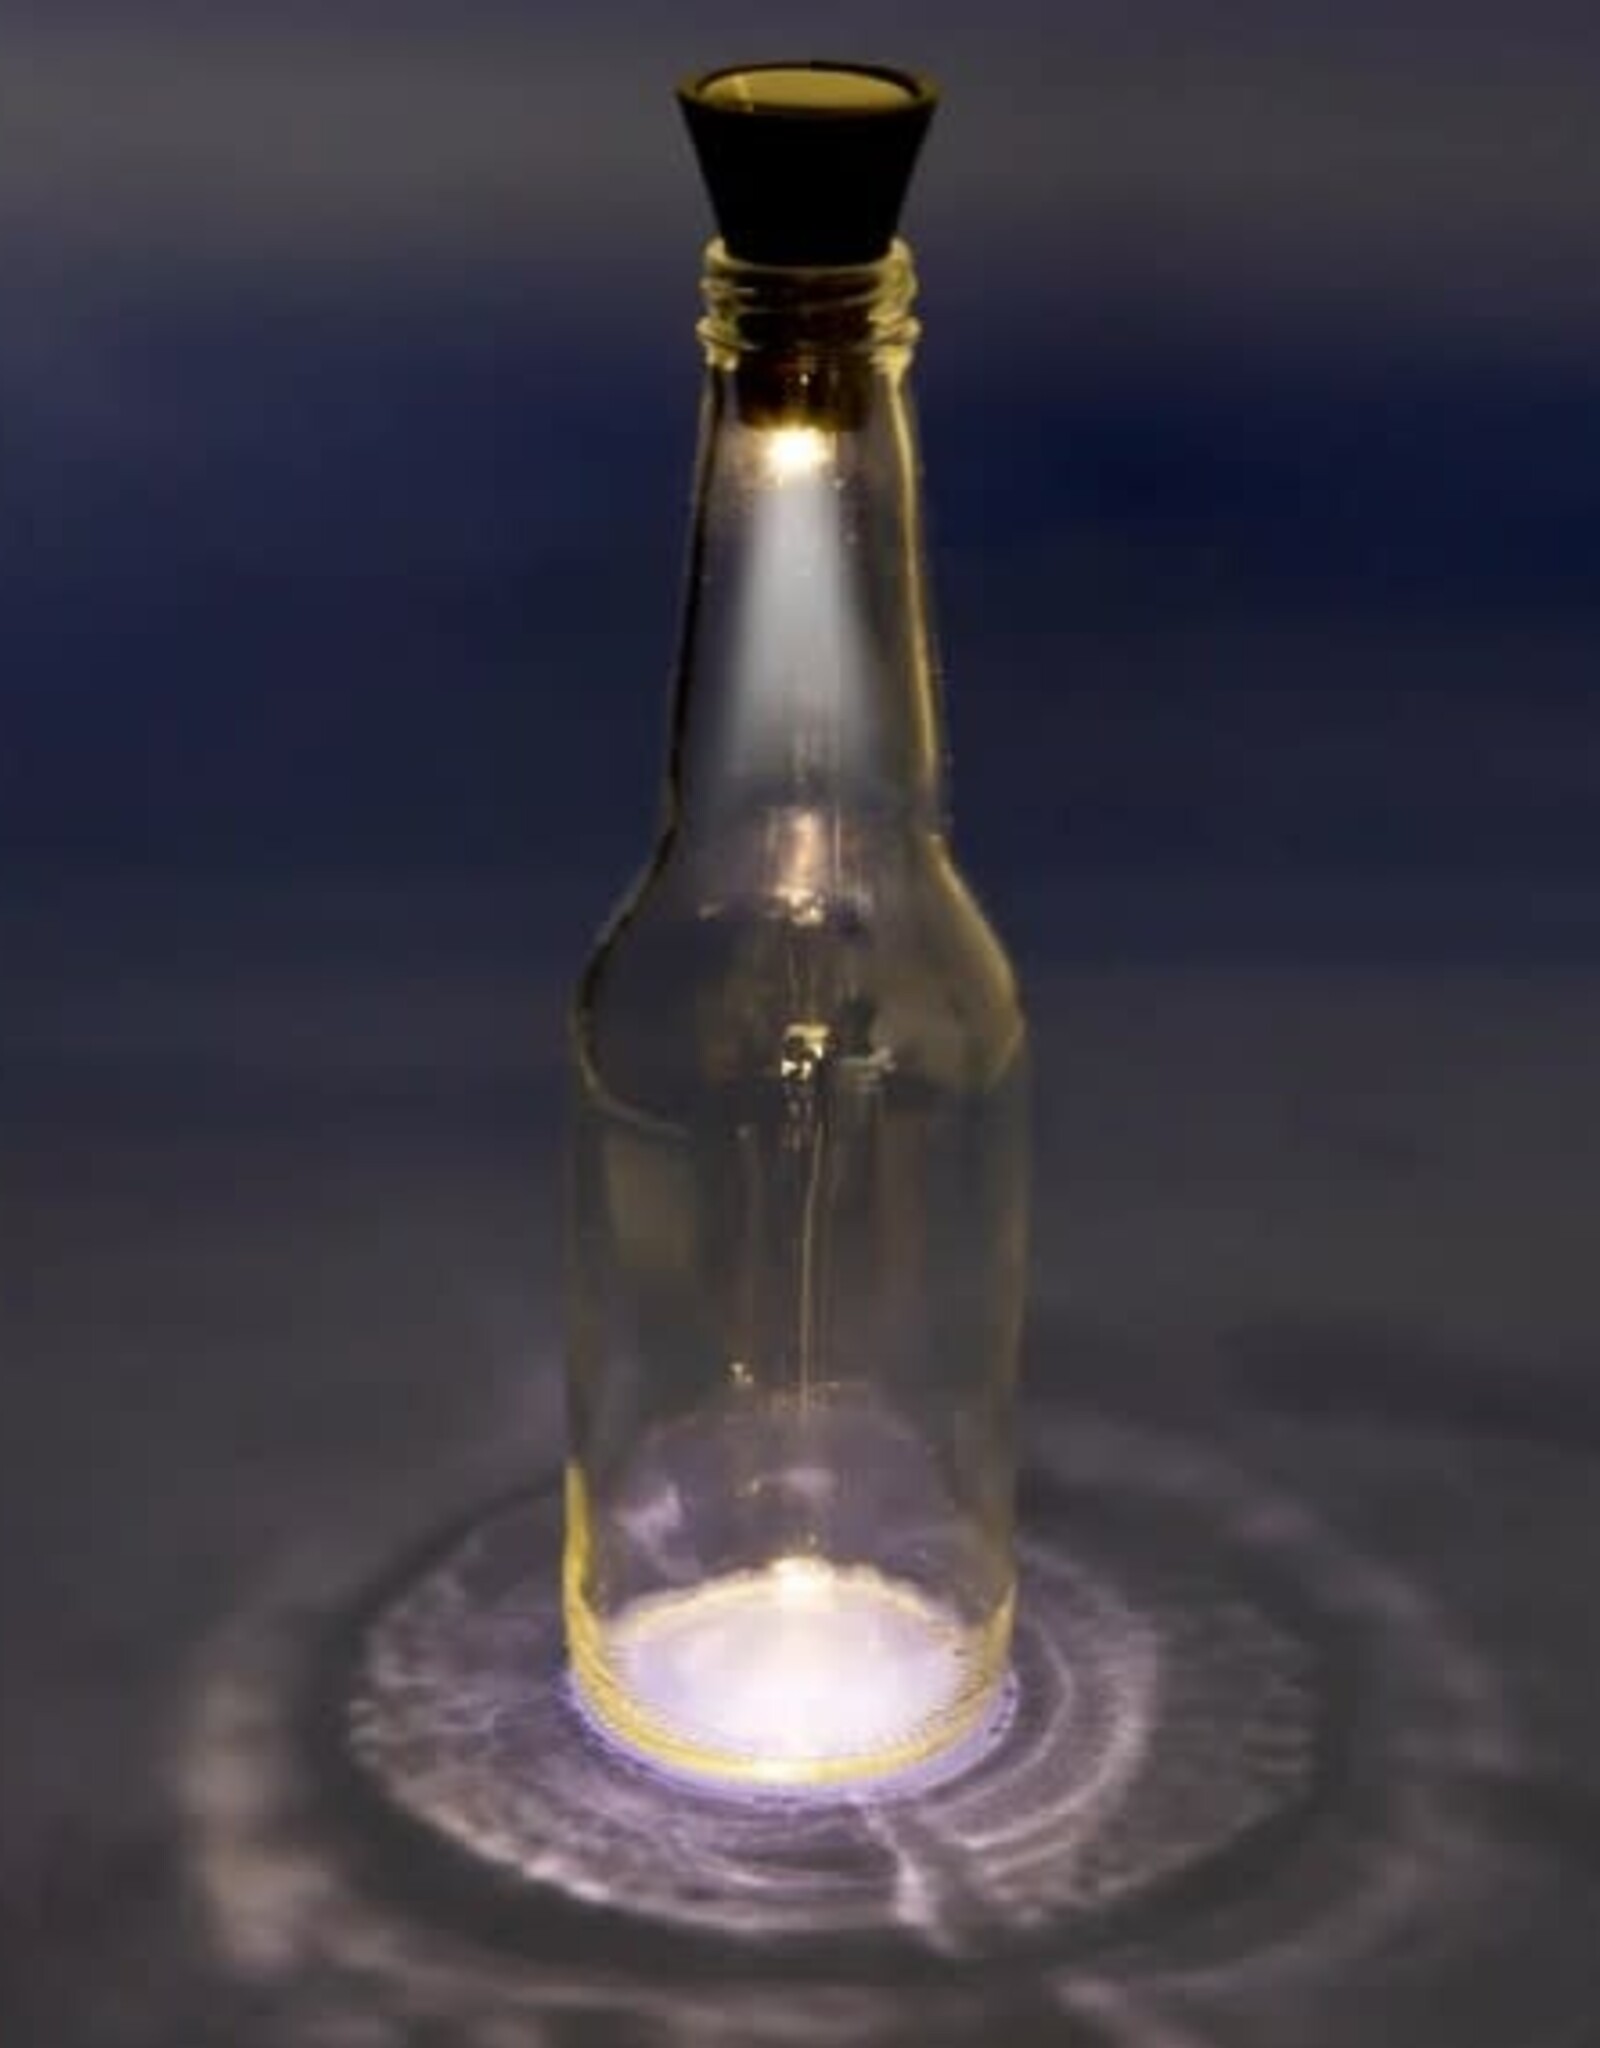 Kikkerland Solar Bottle Light